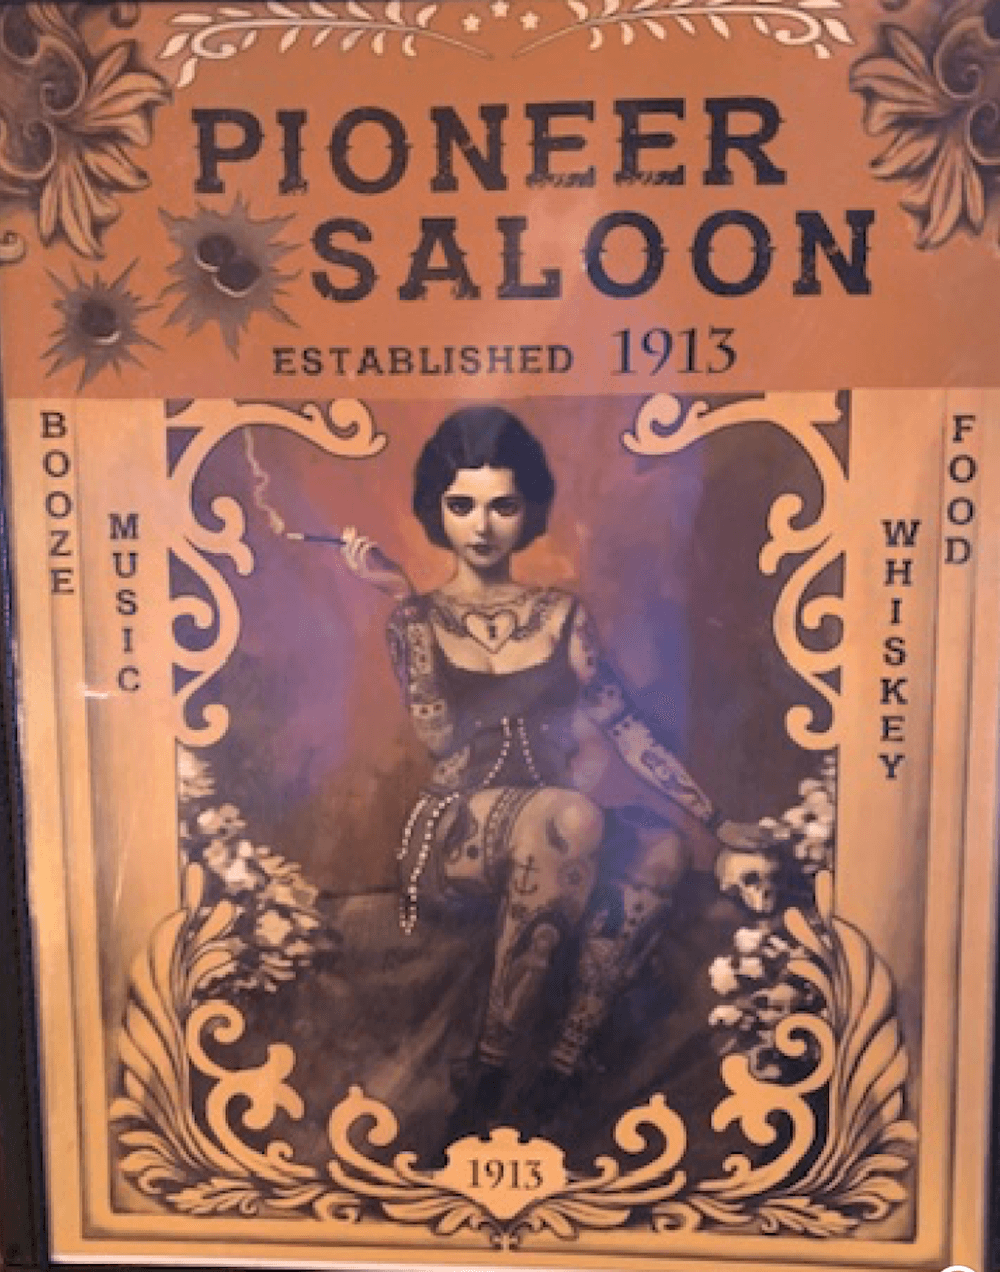 Pioneer Saloon Goodsprings WV